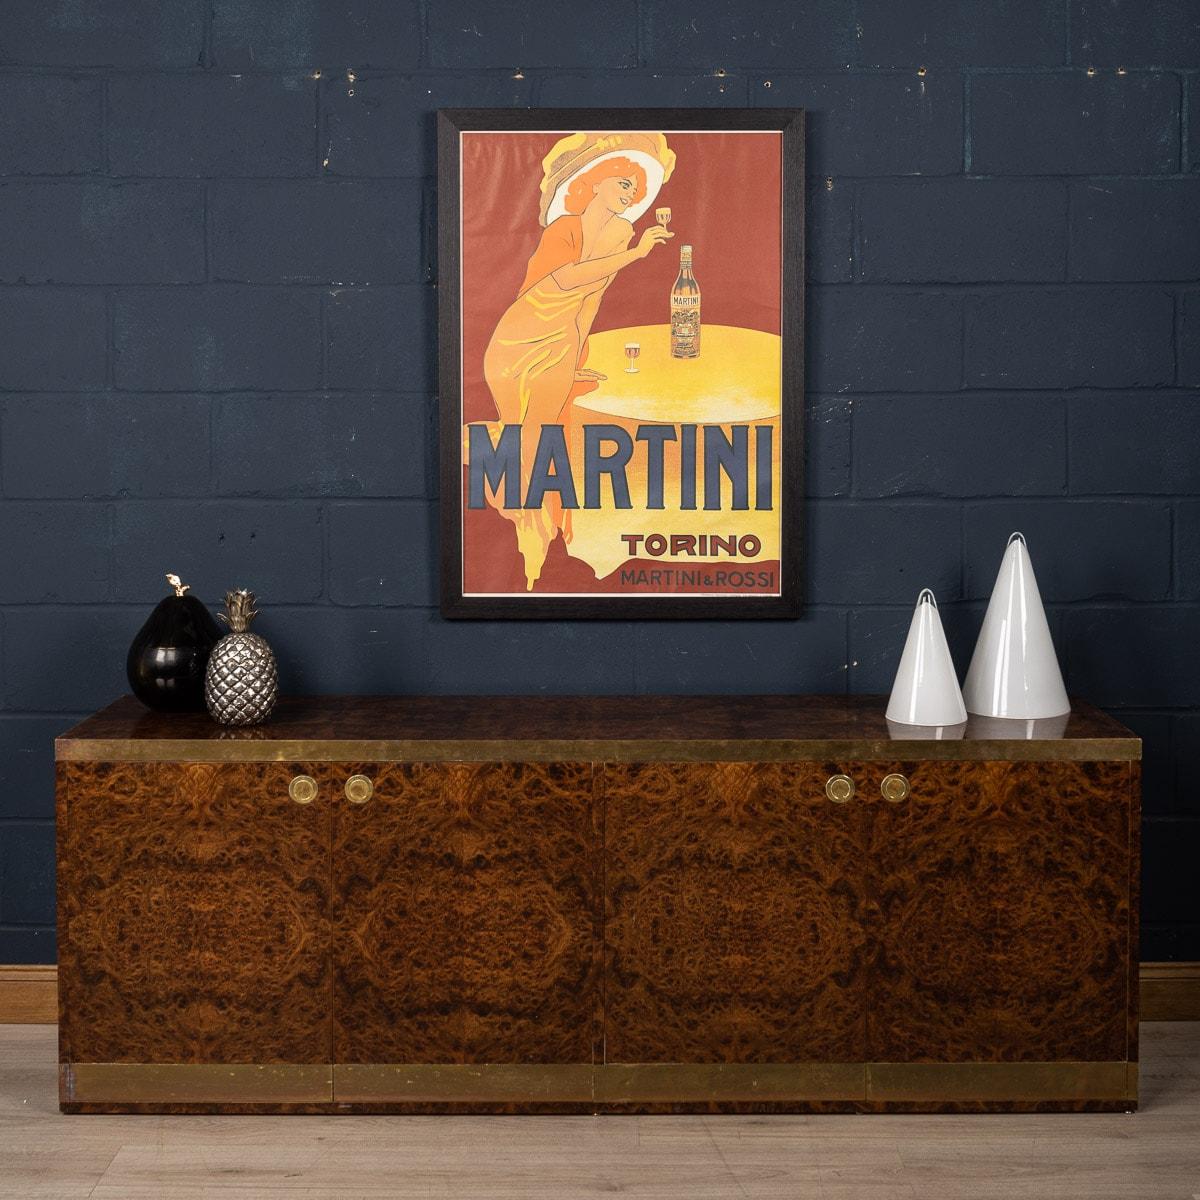 Gerahmtes Werbeplakat für Martini, Italien, um 1970 (Italienisch)